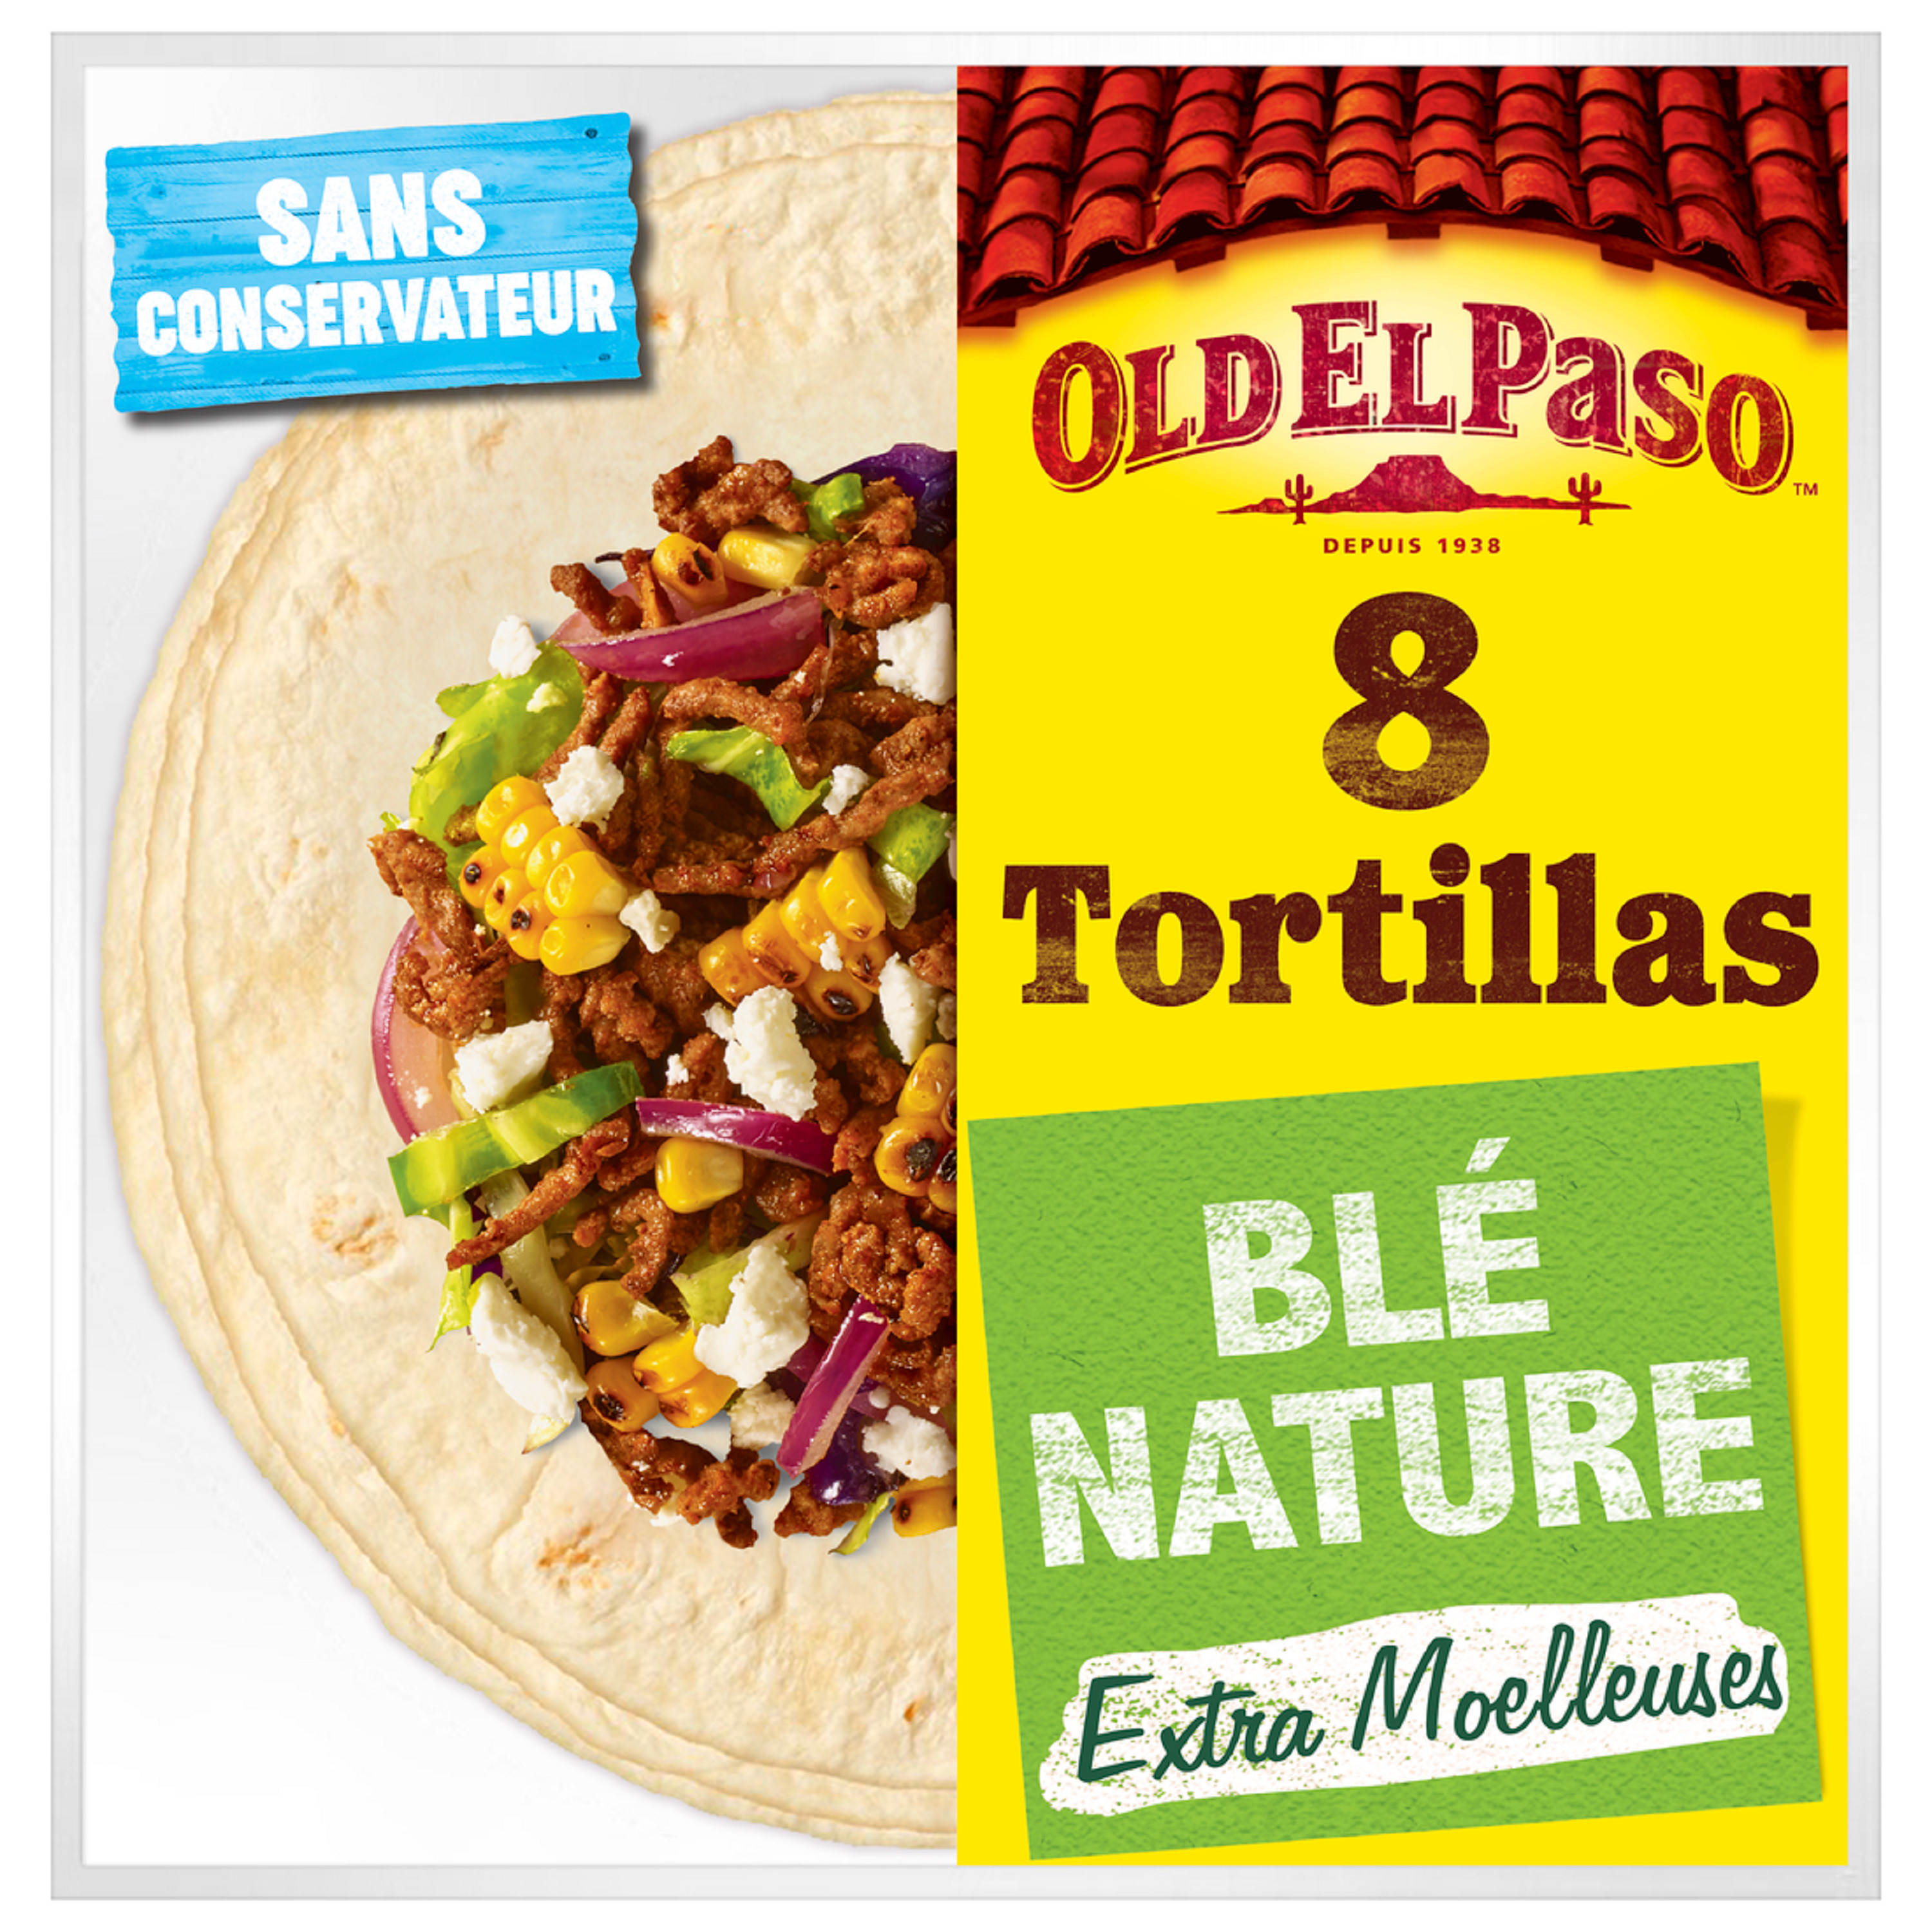 OLD EL PASO Tortillas de blé nature extra moelleuses sans conservateur 8  tortillas 326g pas cher 